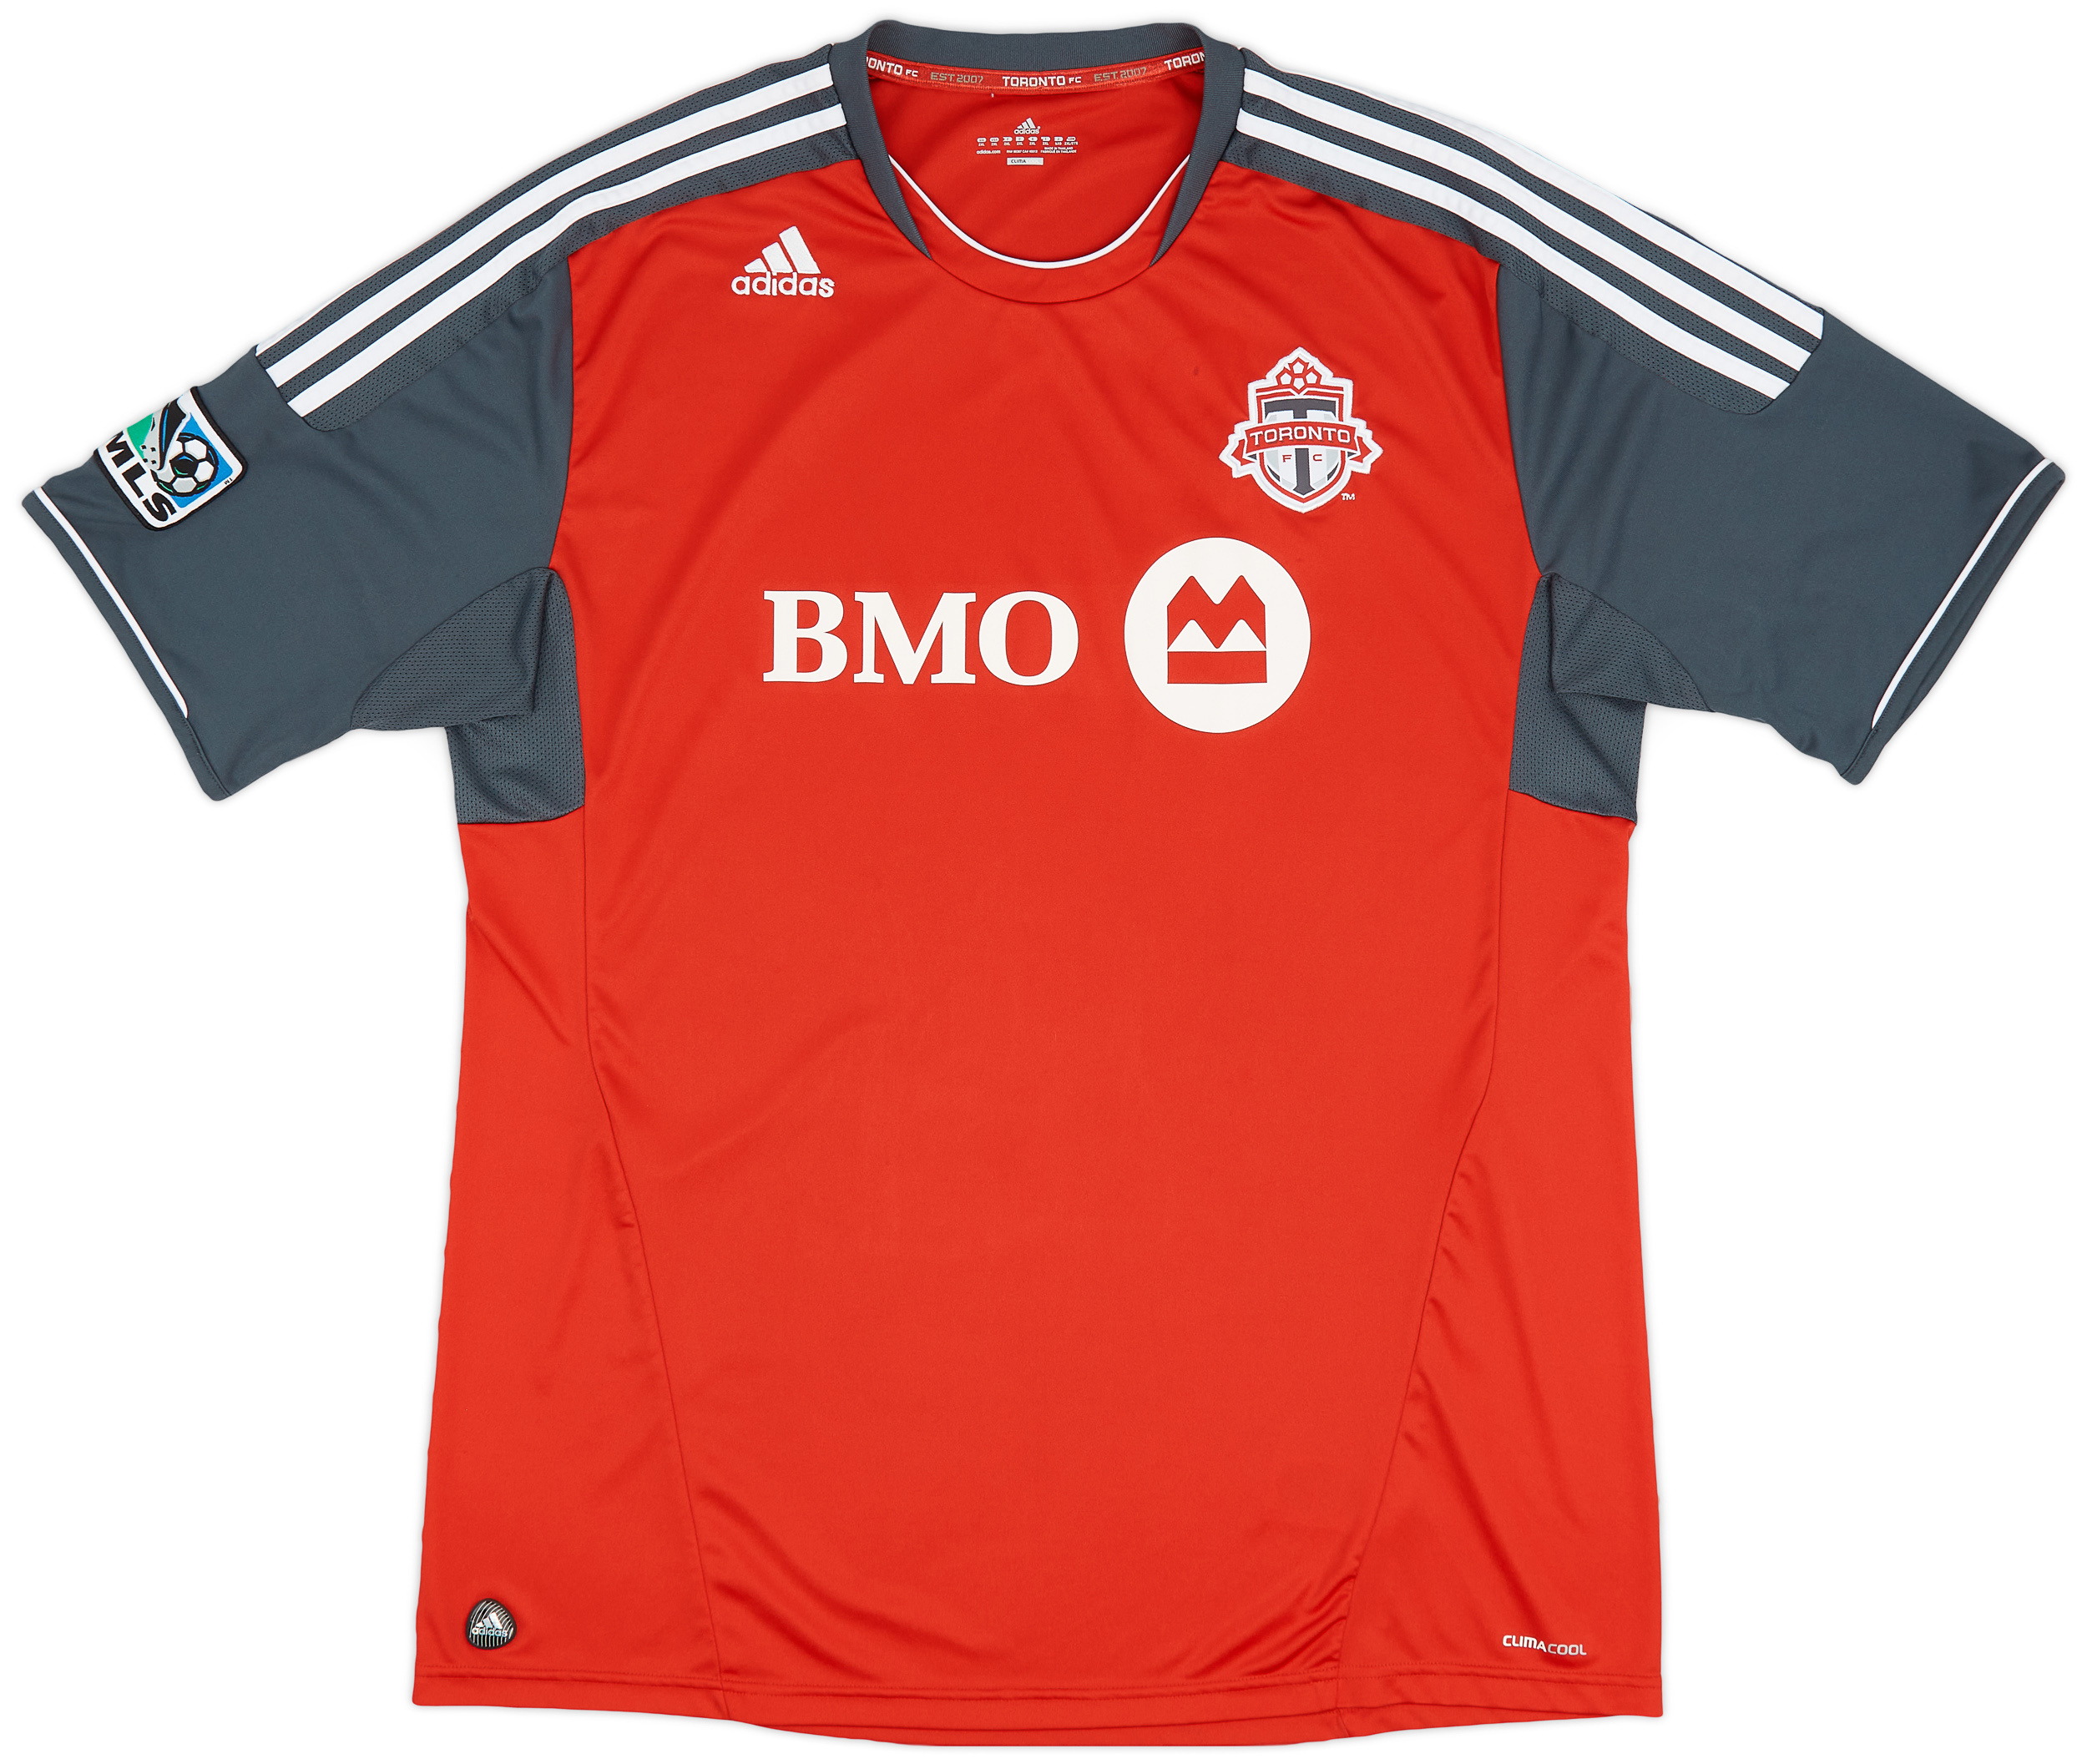 2011-12 Toronto FC Home Shirt - 8/10 - ()